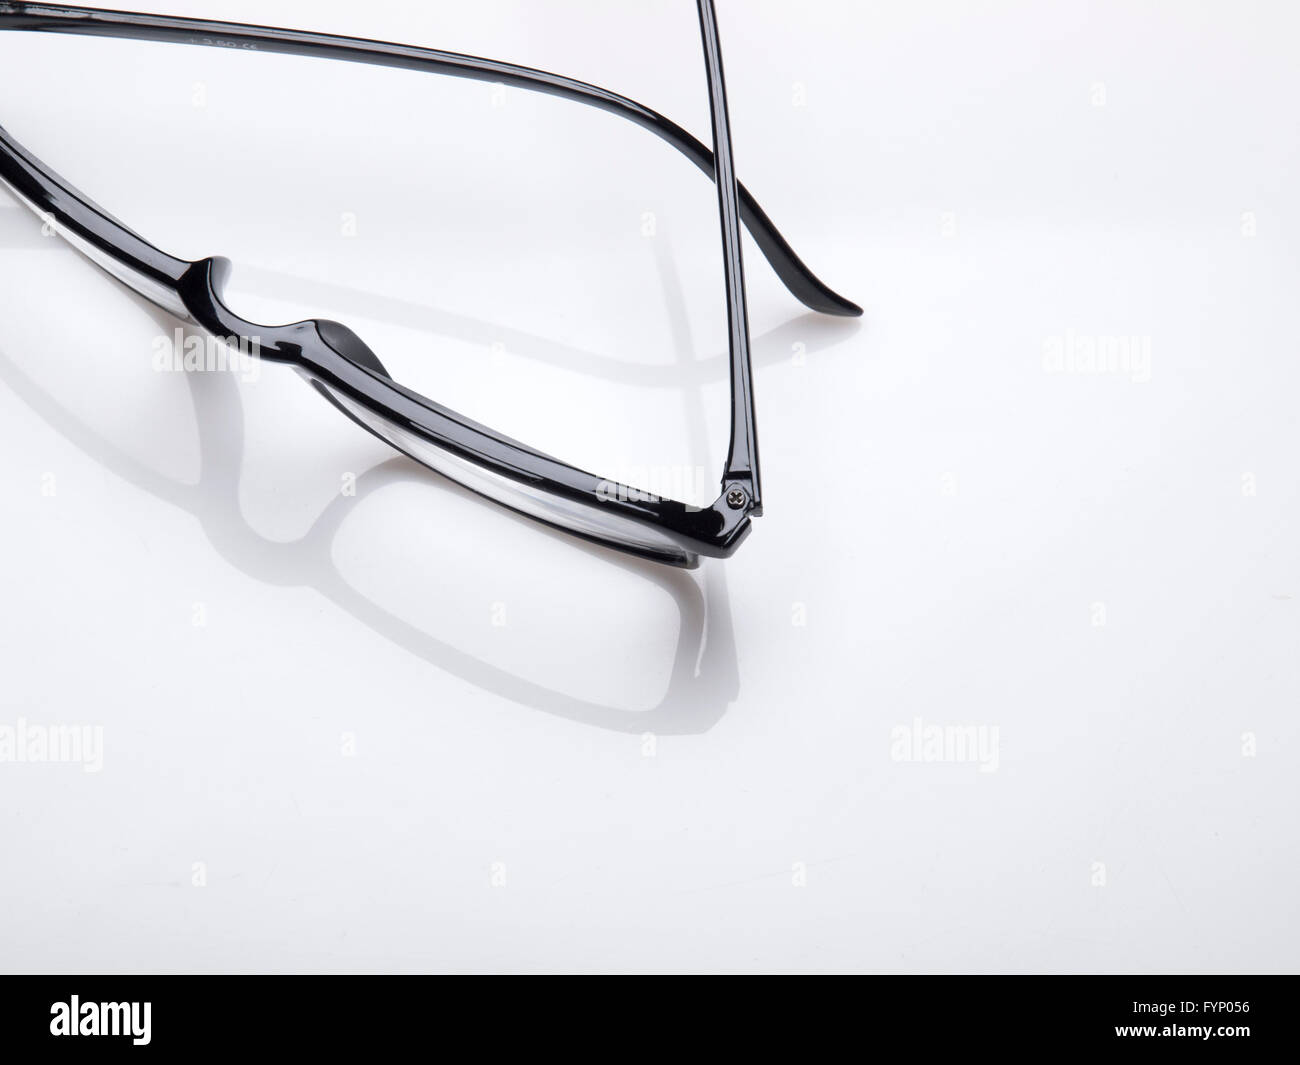 Occhiali con montatura nera su sfondo bianco Foto Stock